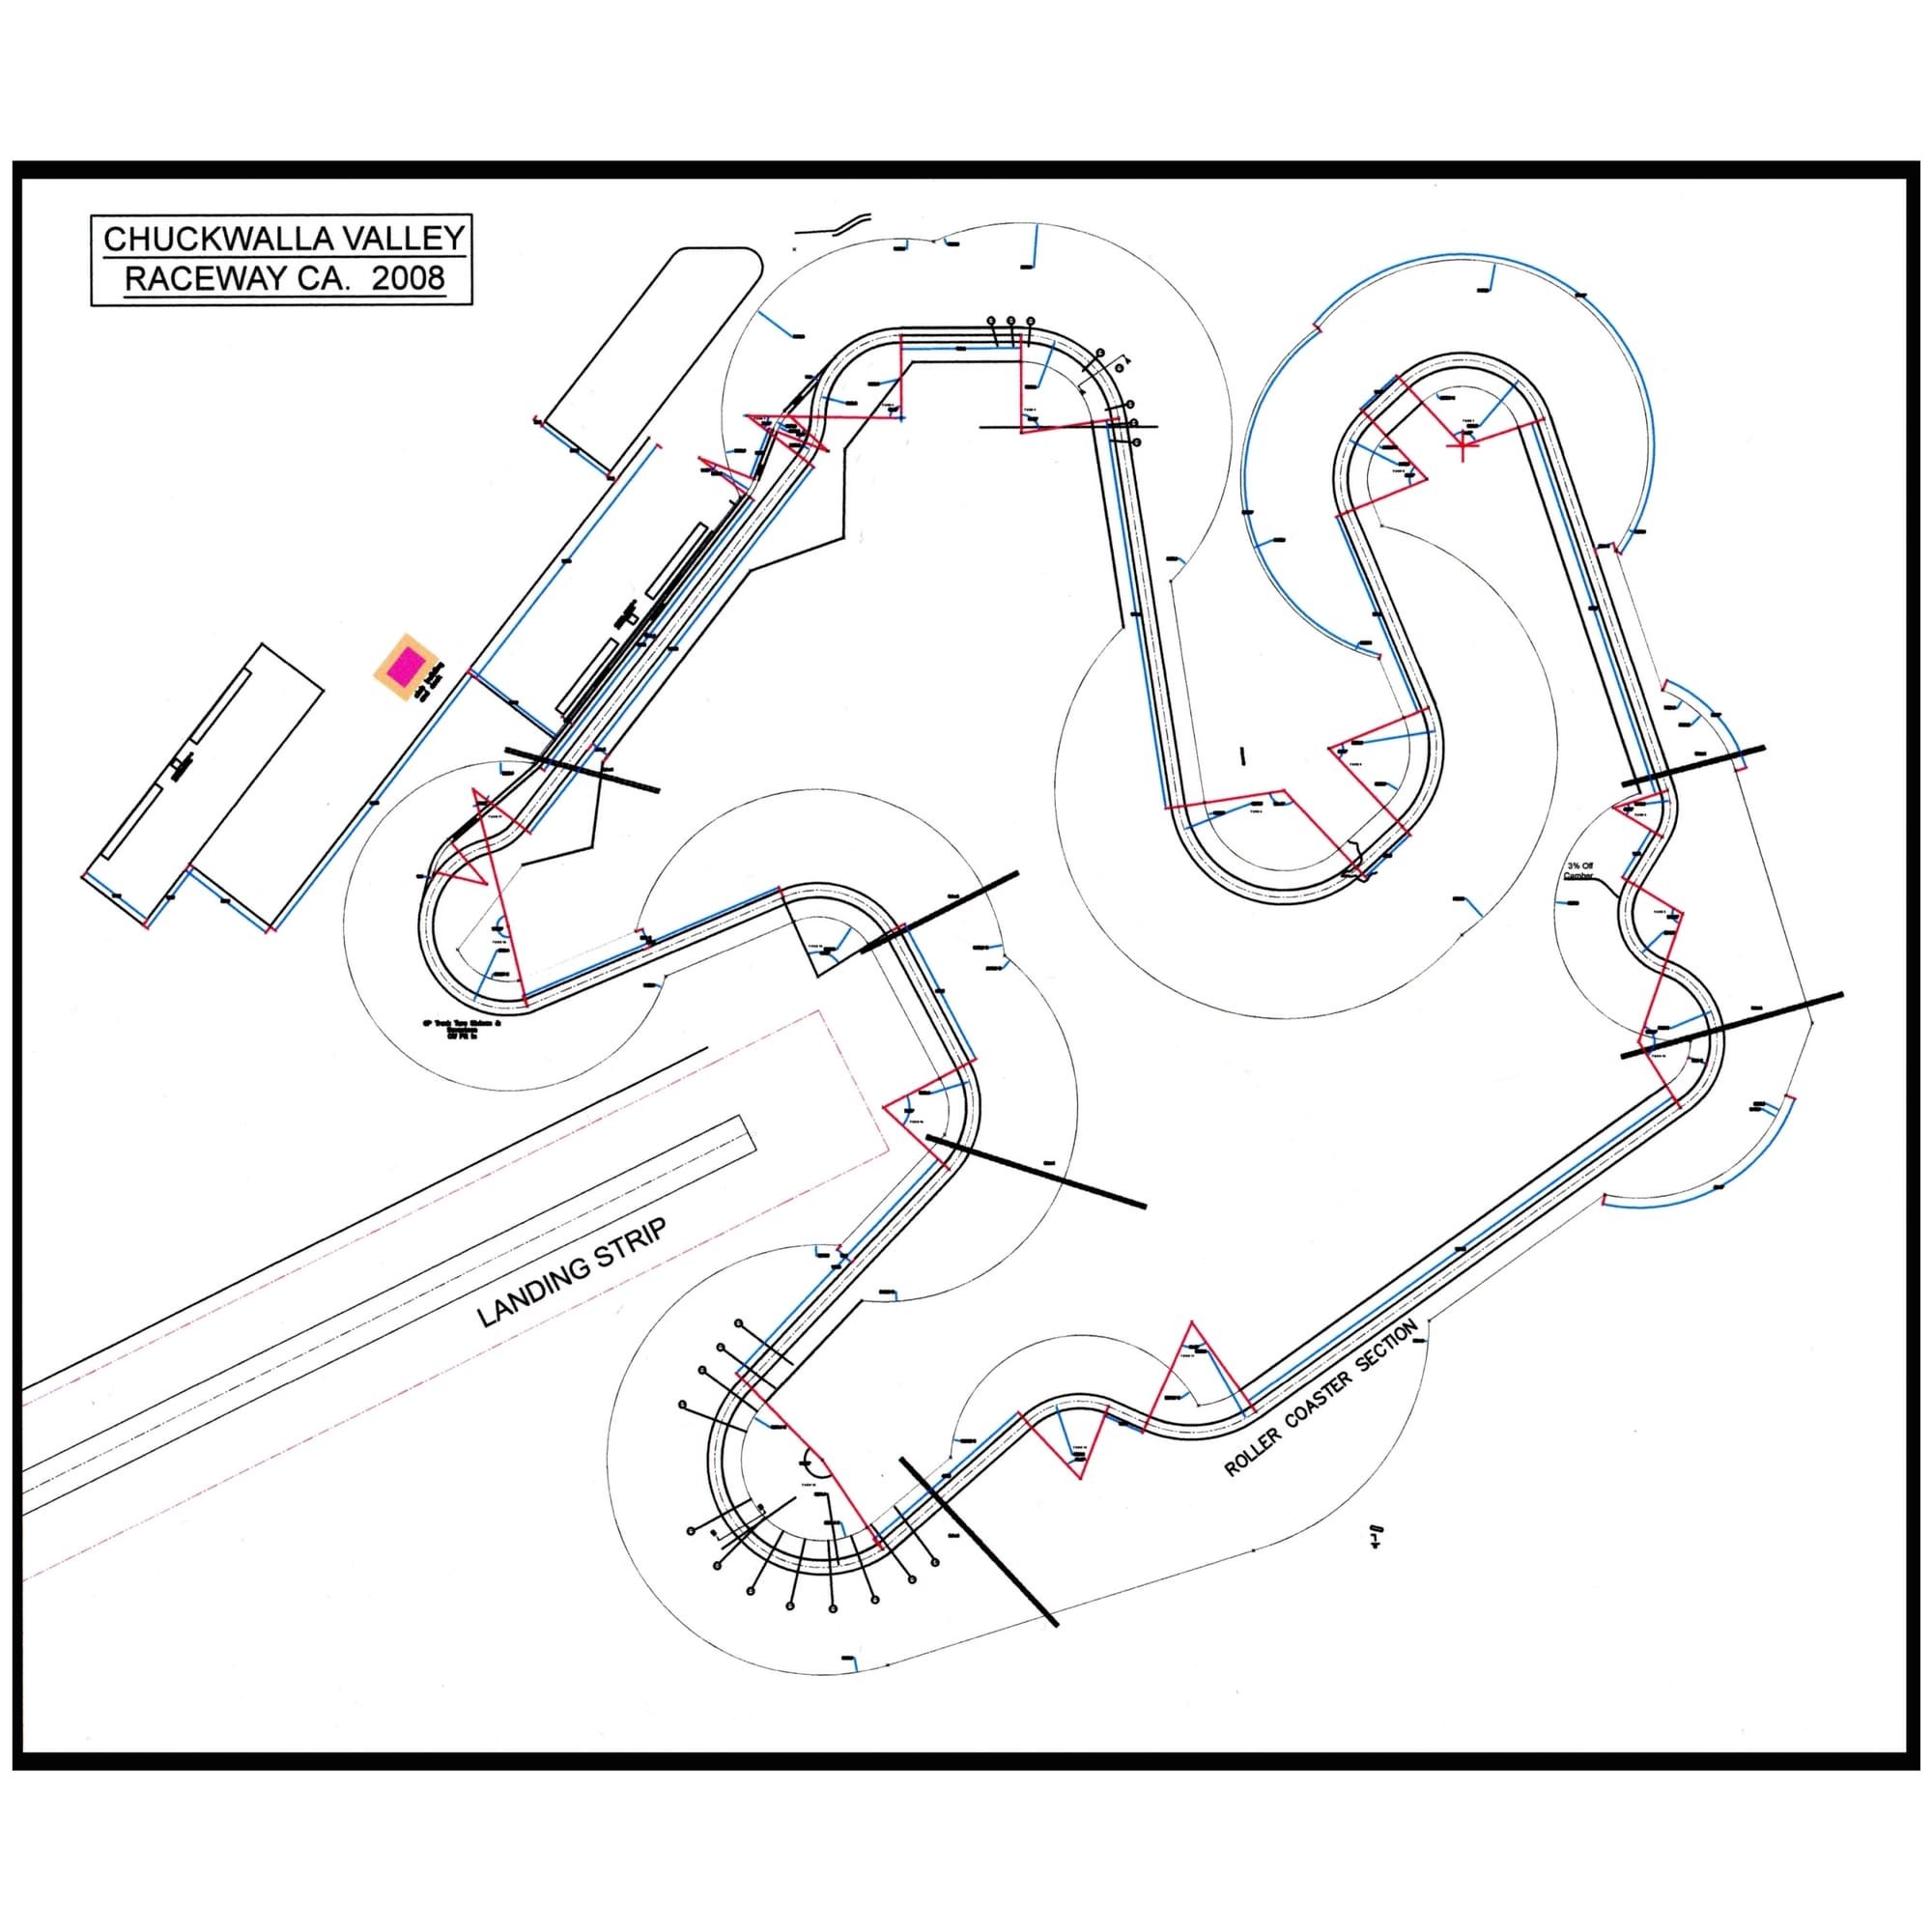 Chuckwalla Valley Raceway "GP" course